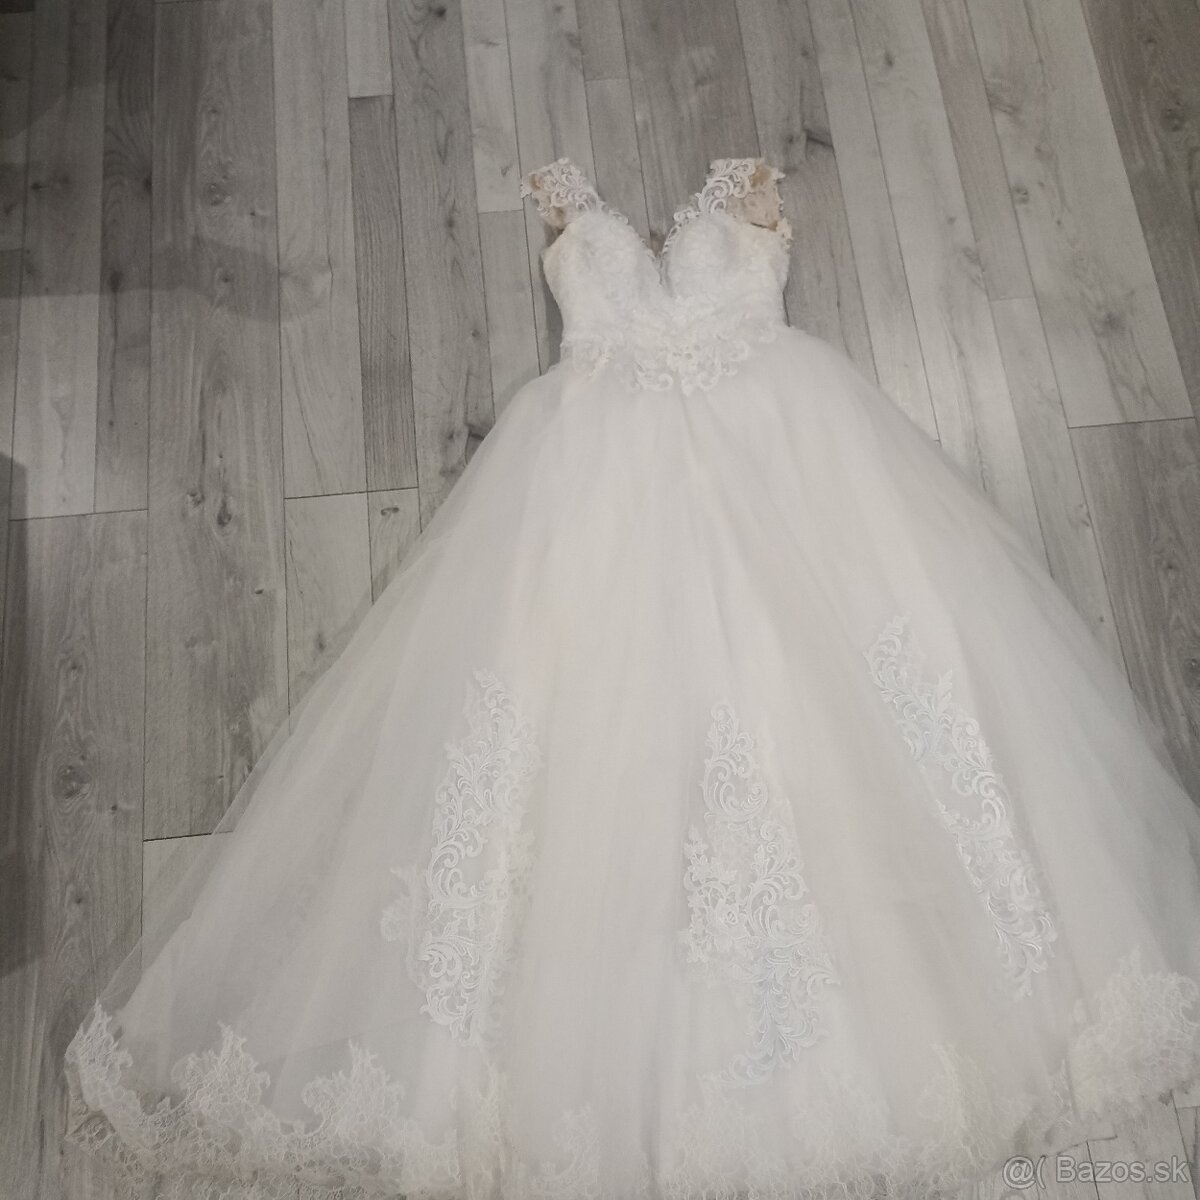 Princeznovske svadobné šaty